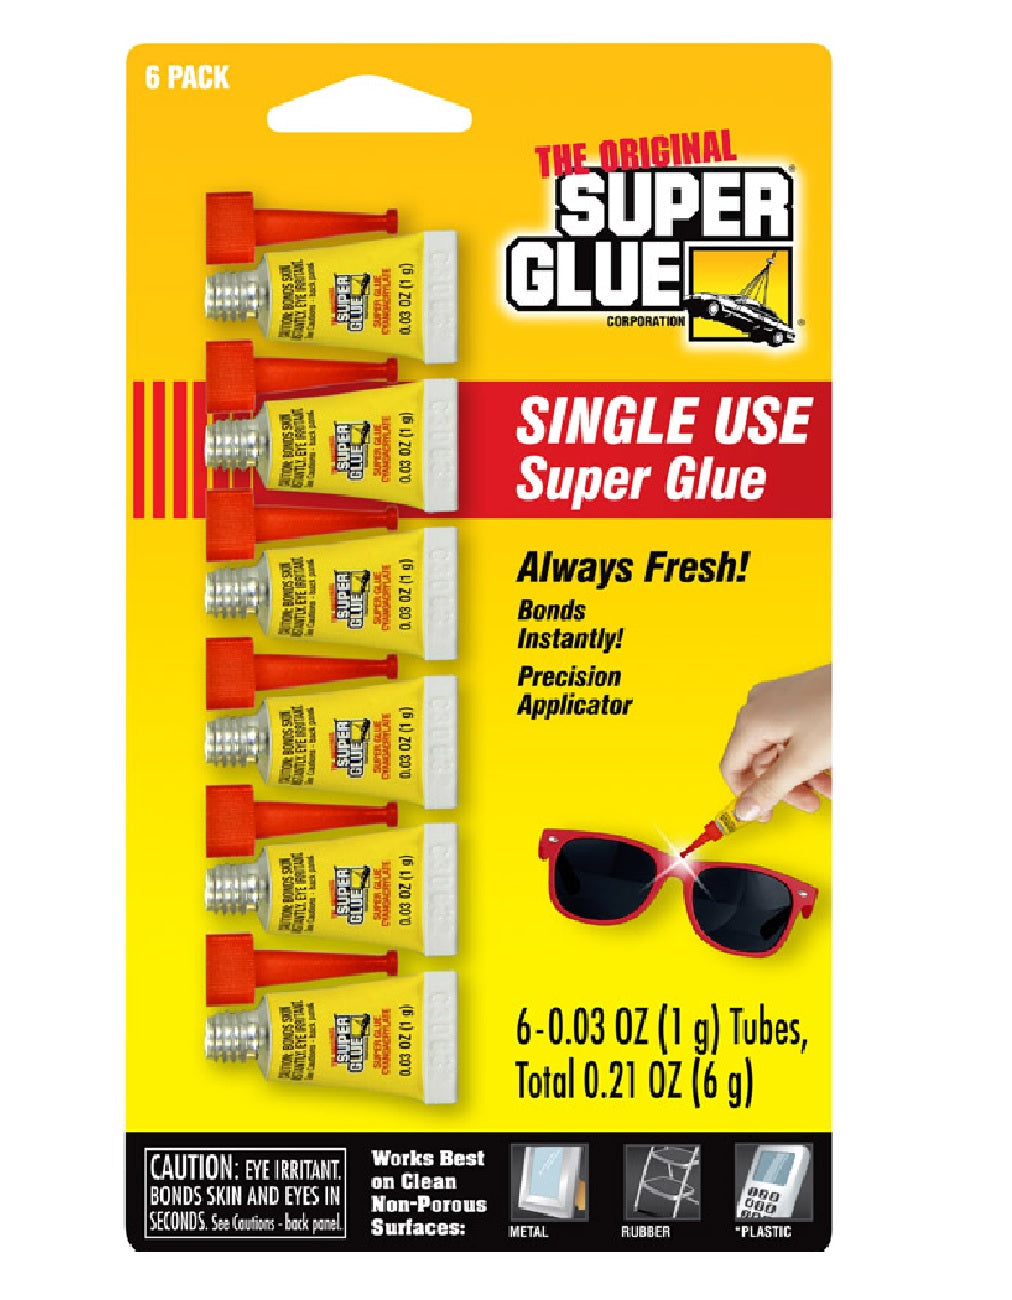 SINGLE USE SUPER GLUE - The Original - 4 PACK